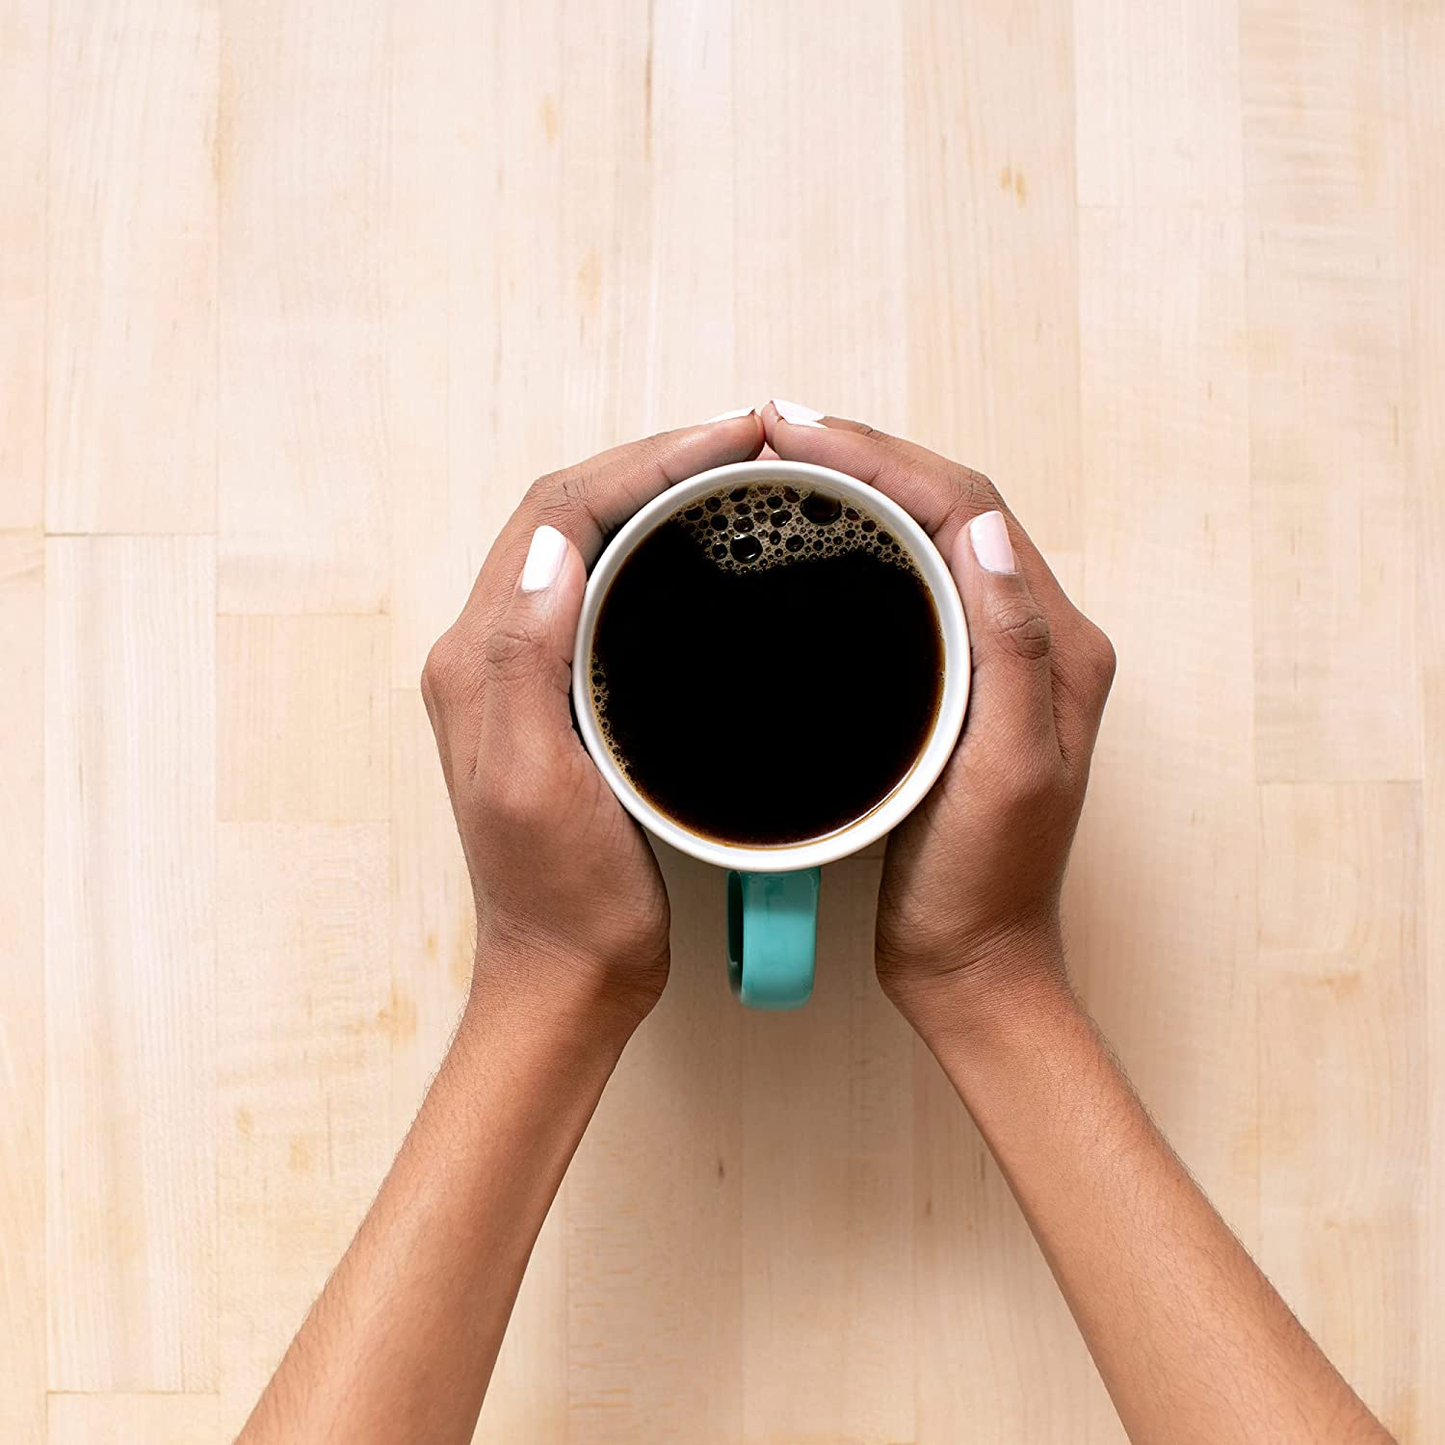 Dark Coffee, Keurig Single-Serve K-Cup Pods, Dark Roast, 32 Count